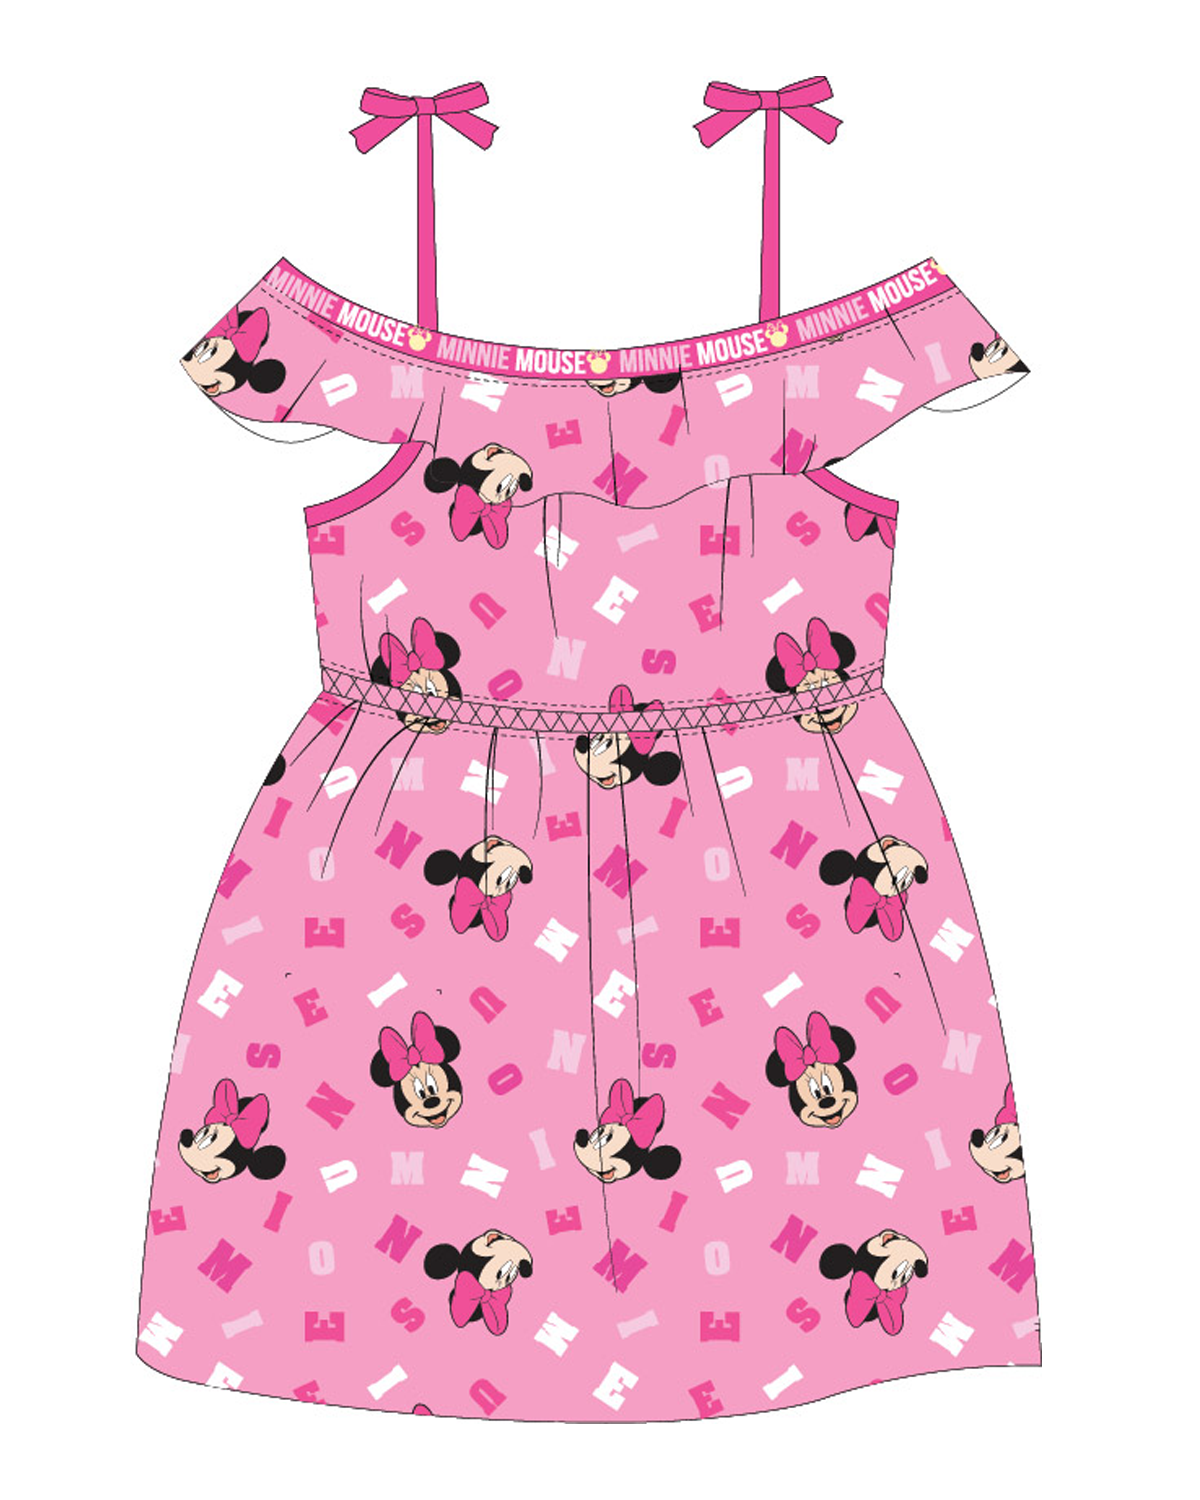 Minnie Mouse - licence Dívčí šaty - Minnie Mouse 52239631, růžová Barva: Růžová, Velikost: 134